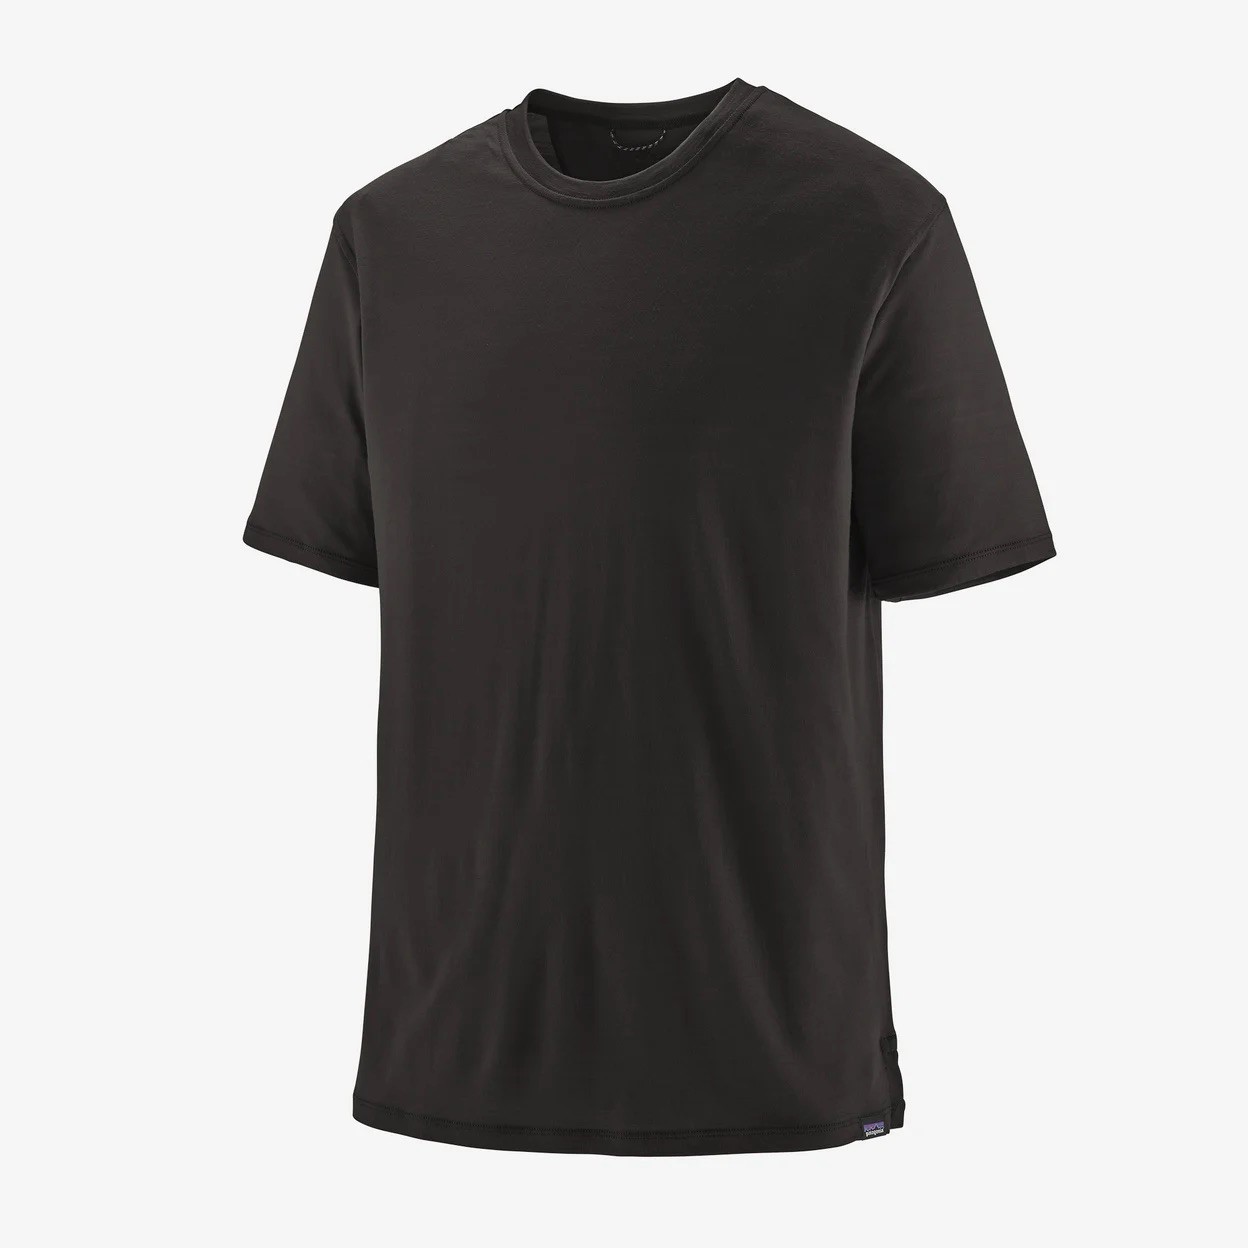 Patagonia M's Capilene Cool Merino Shirt - Black - Large